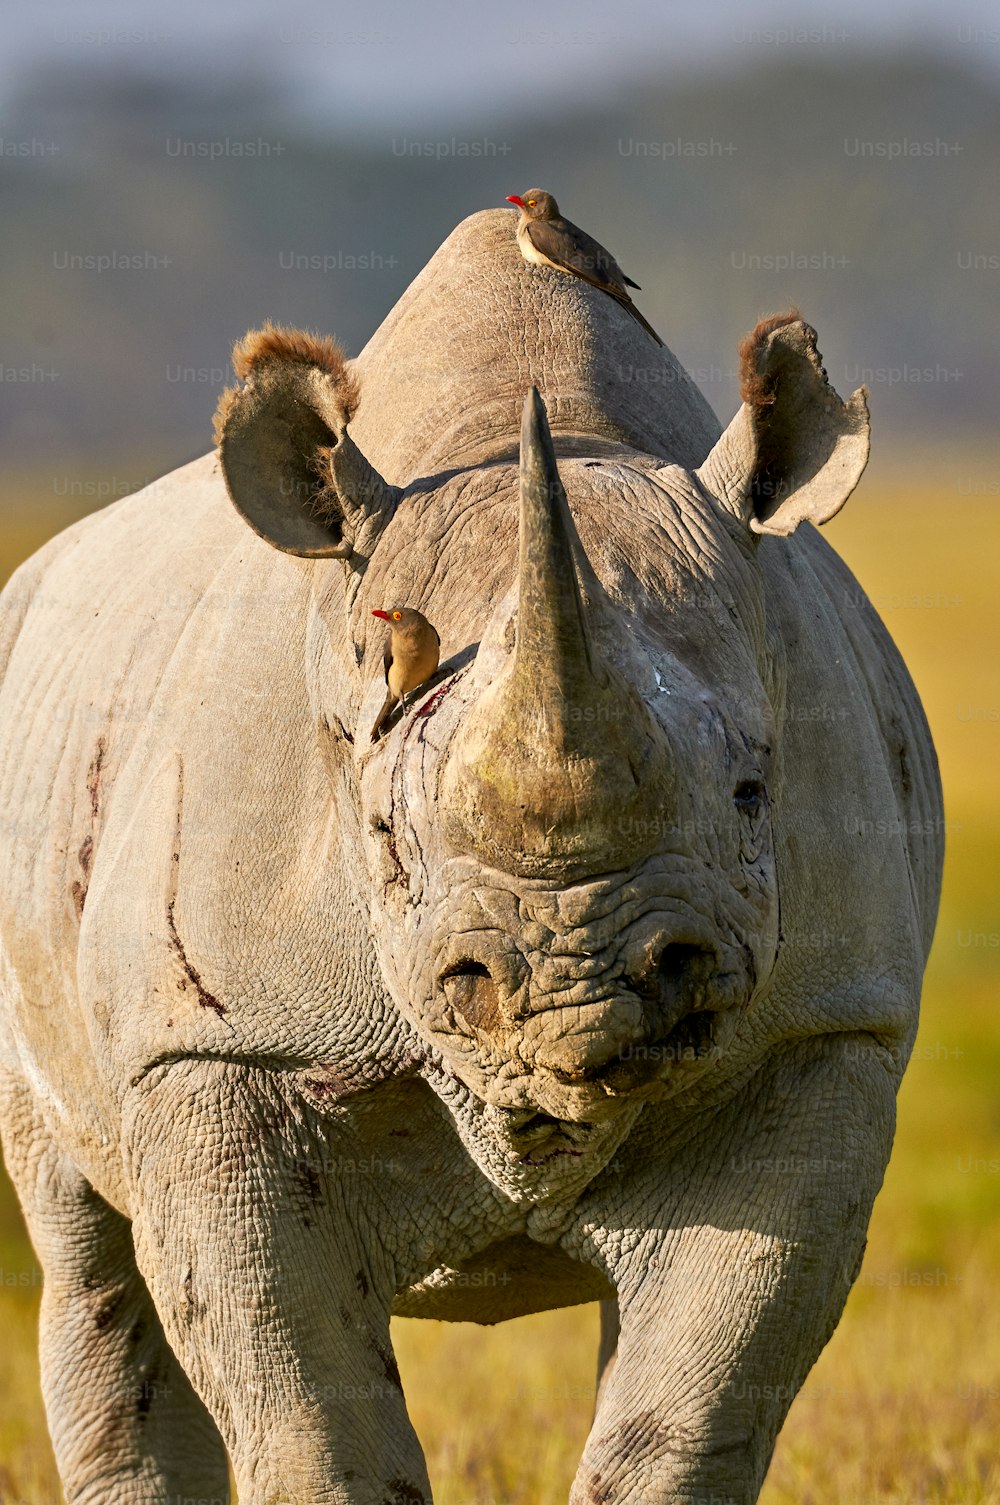 Ritratto di un bellissimo rinoceronte nero con due bufaghe sulla testa e sul dorso